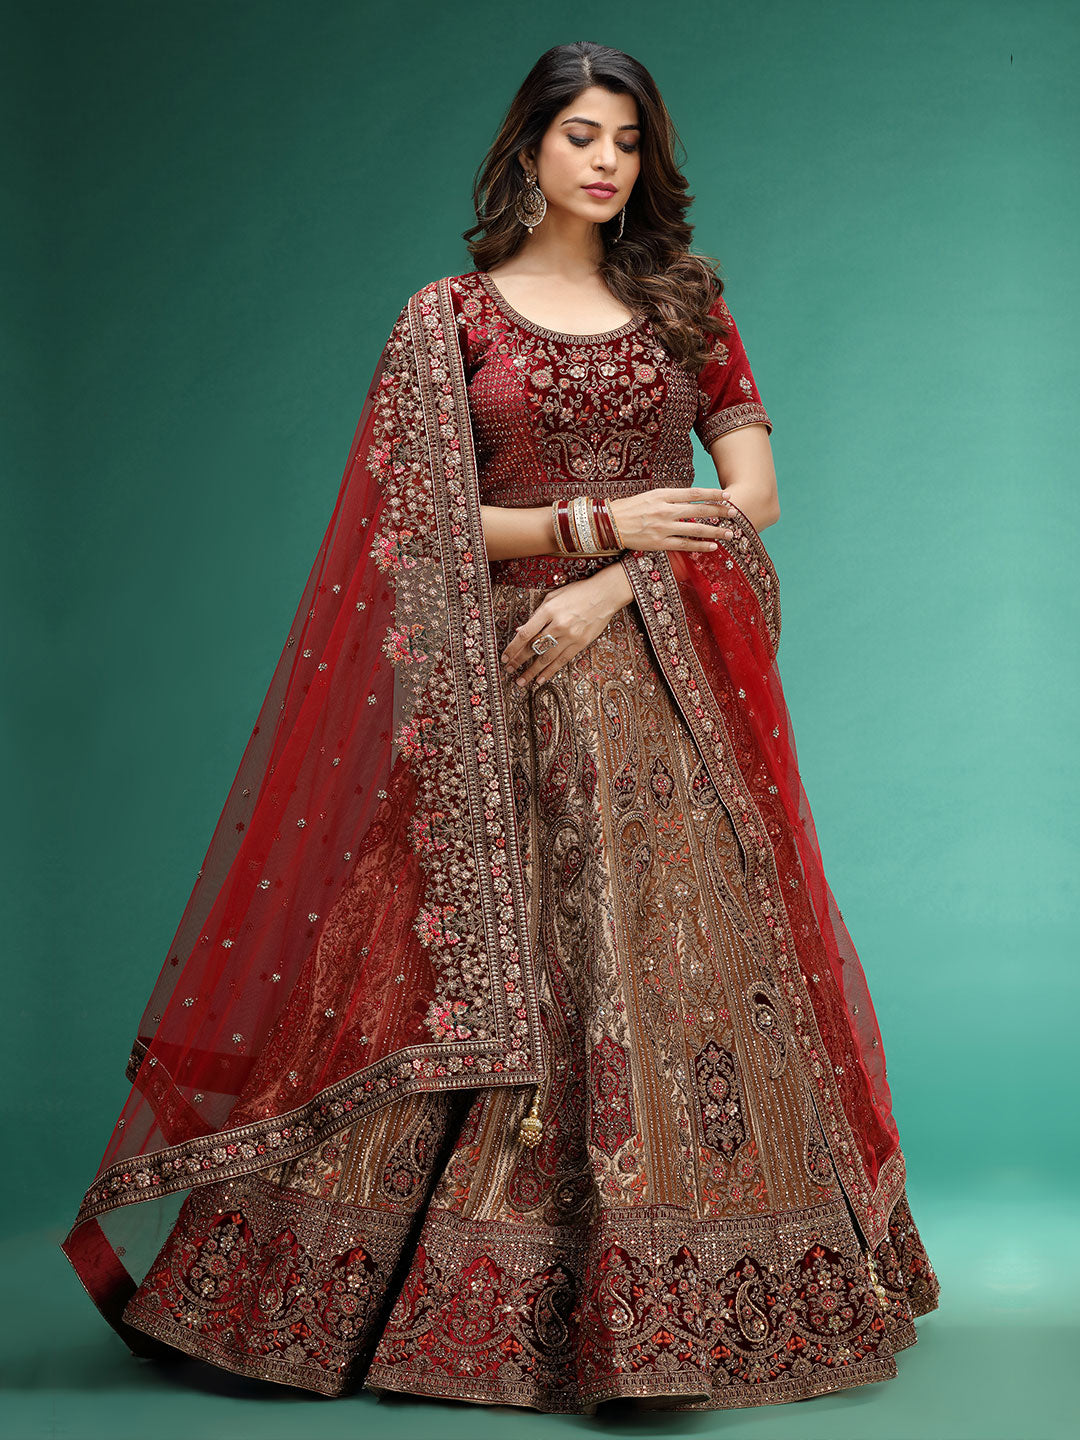 Wedding Lehenga Collection Review || Suvidha Fashion || Suvidha Dadar  Lehenga - YouTube